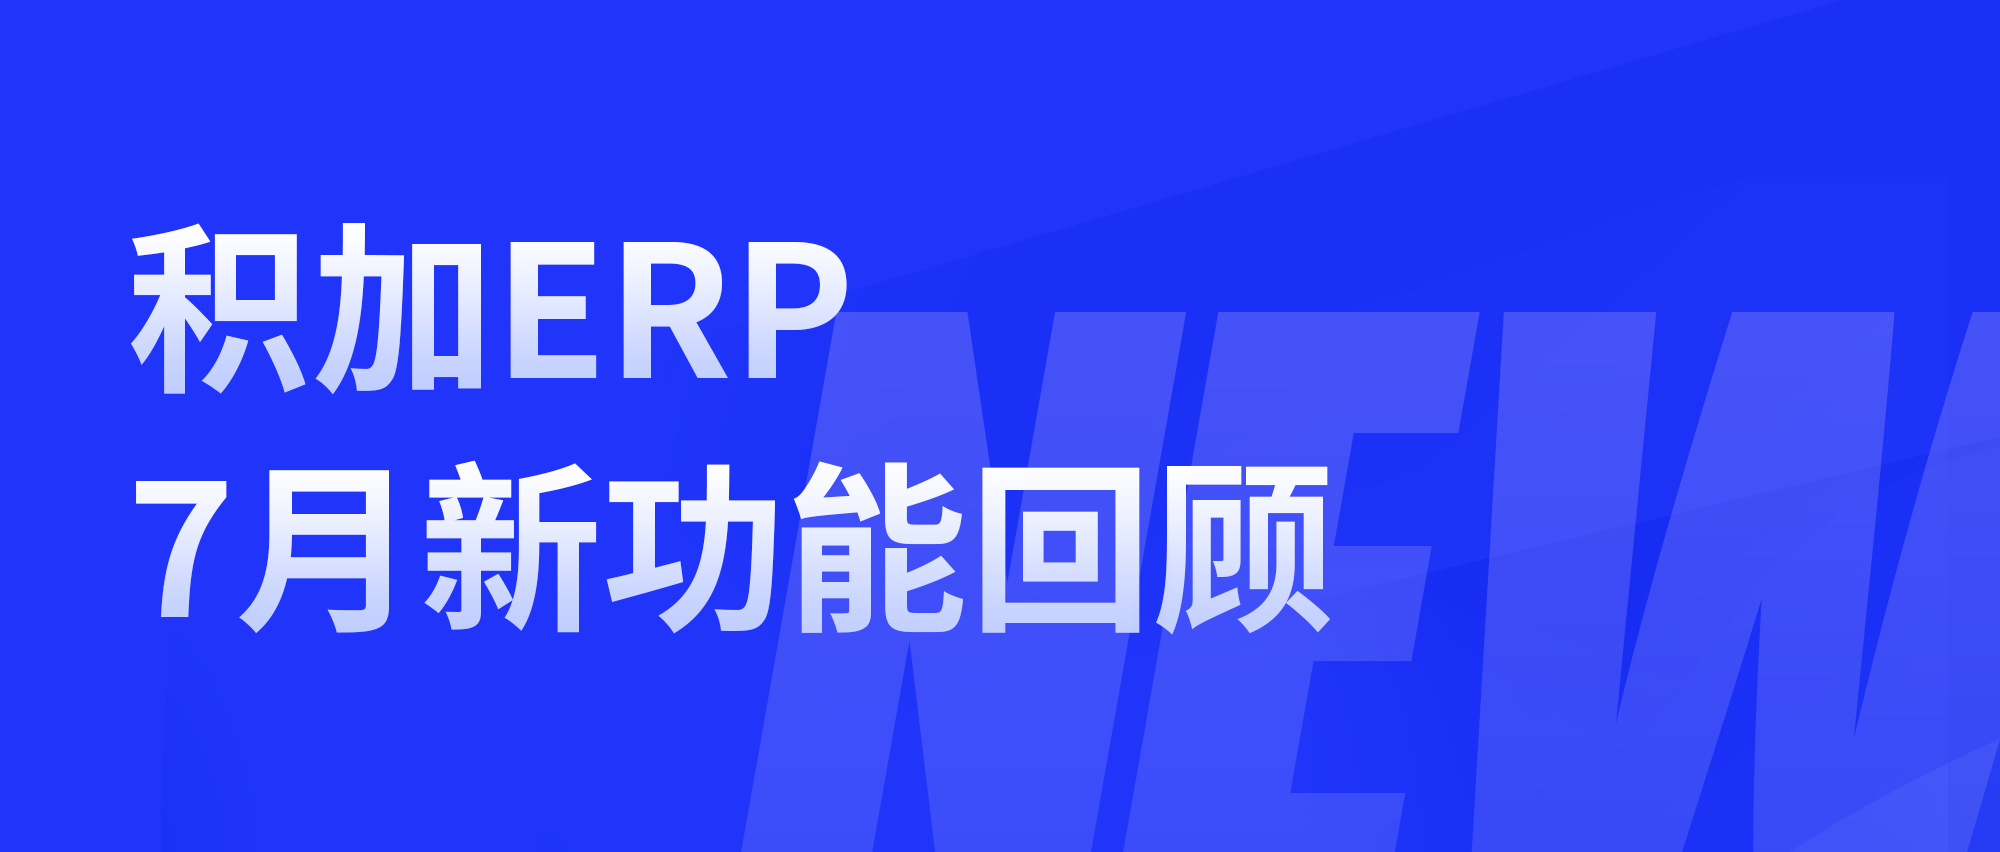 积加ERP丨7月新功能回顾合集